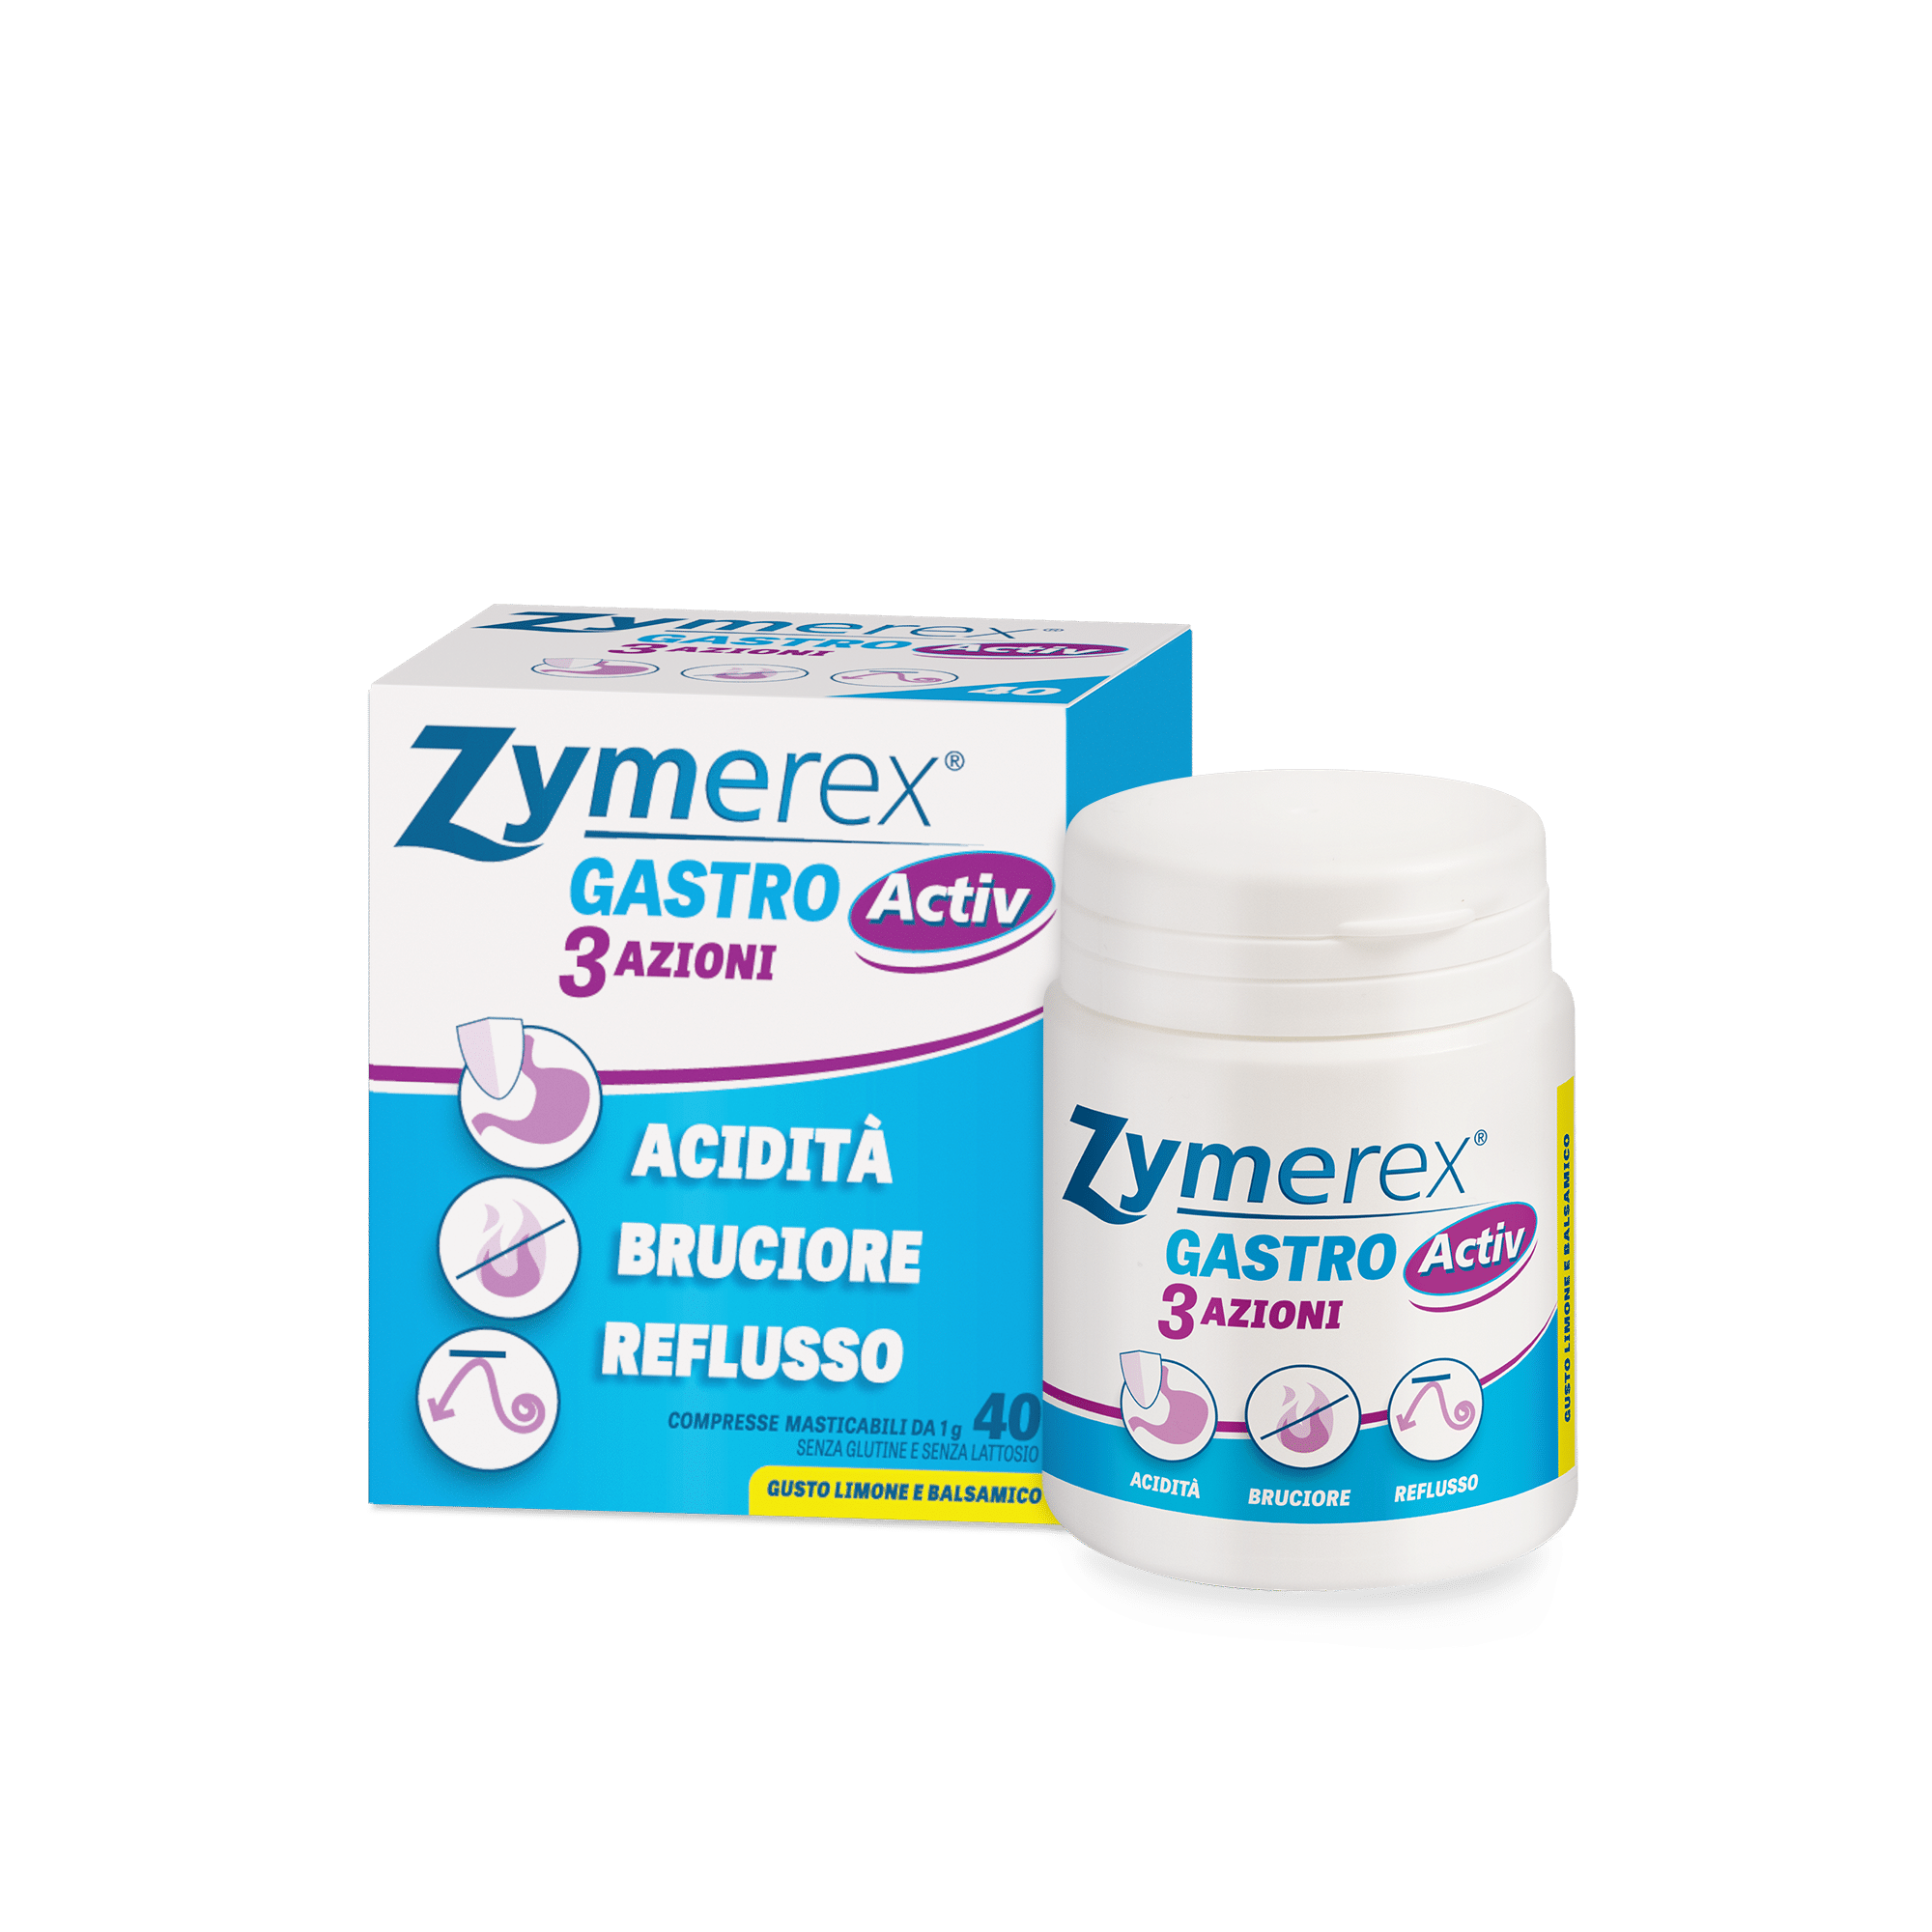 zymerex gastro active confezione e contenuto